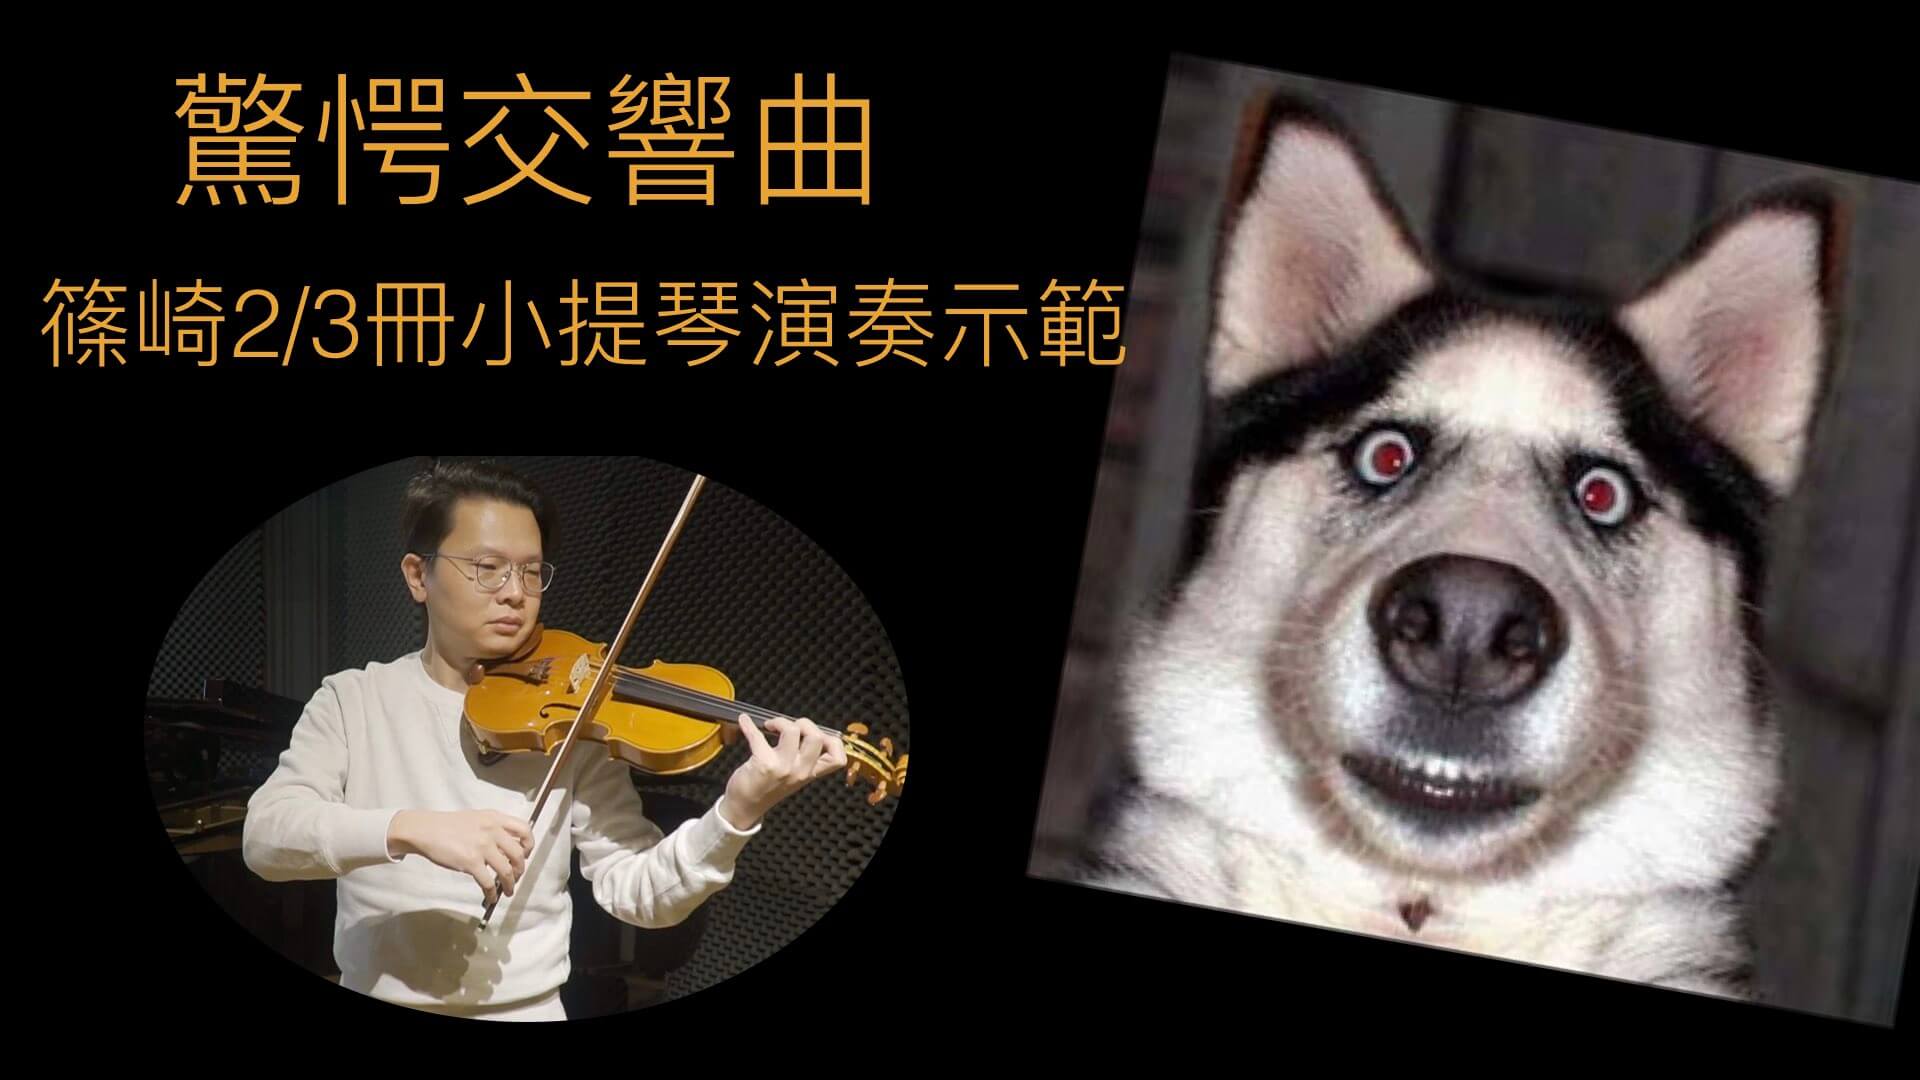 從學習小提琴中去培養人生態度 @
			
				張偉軒小提琴
			
		